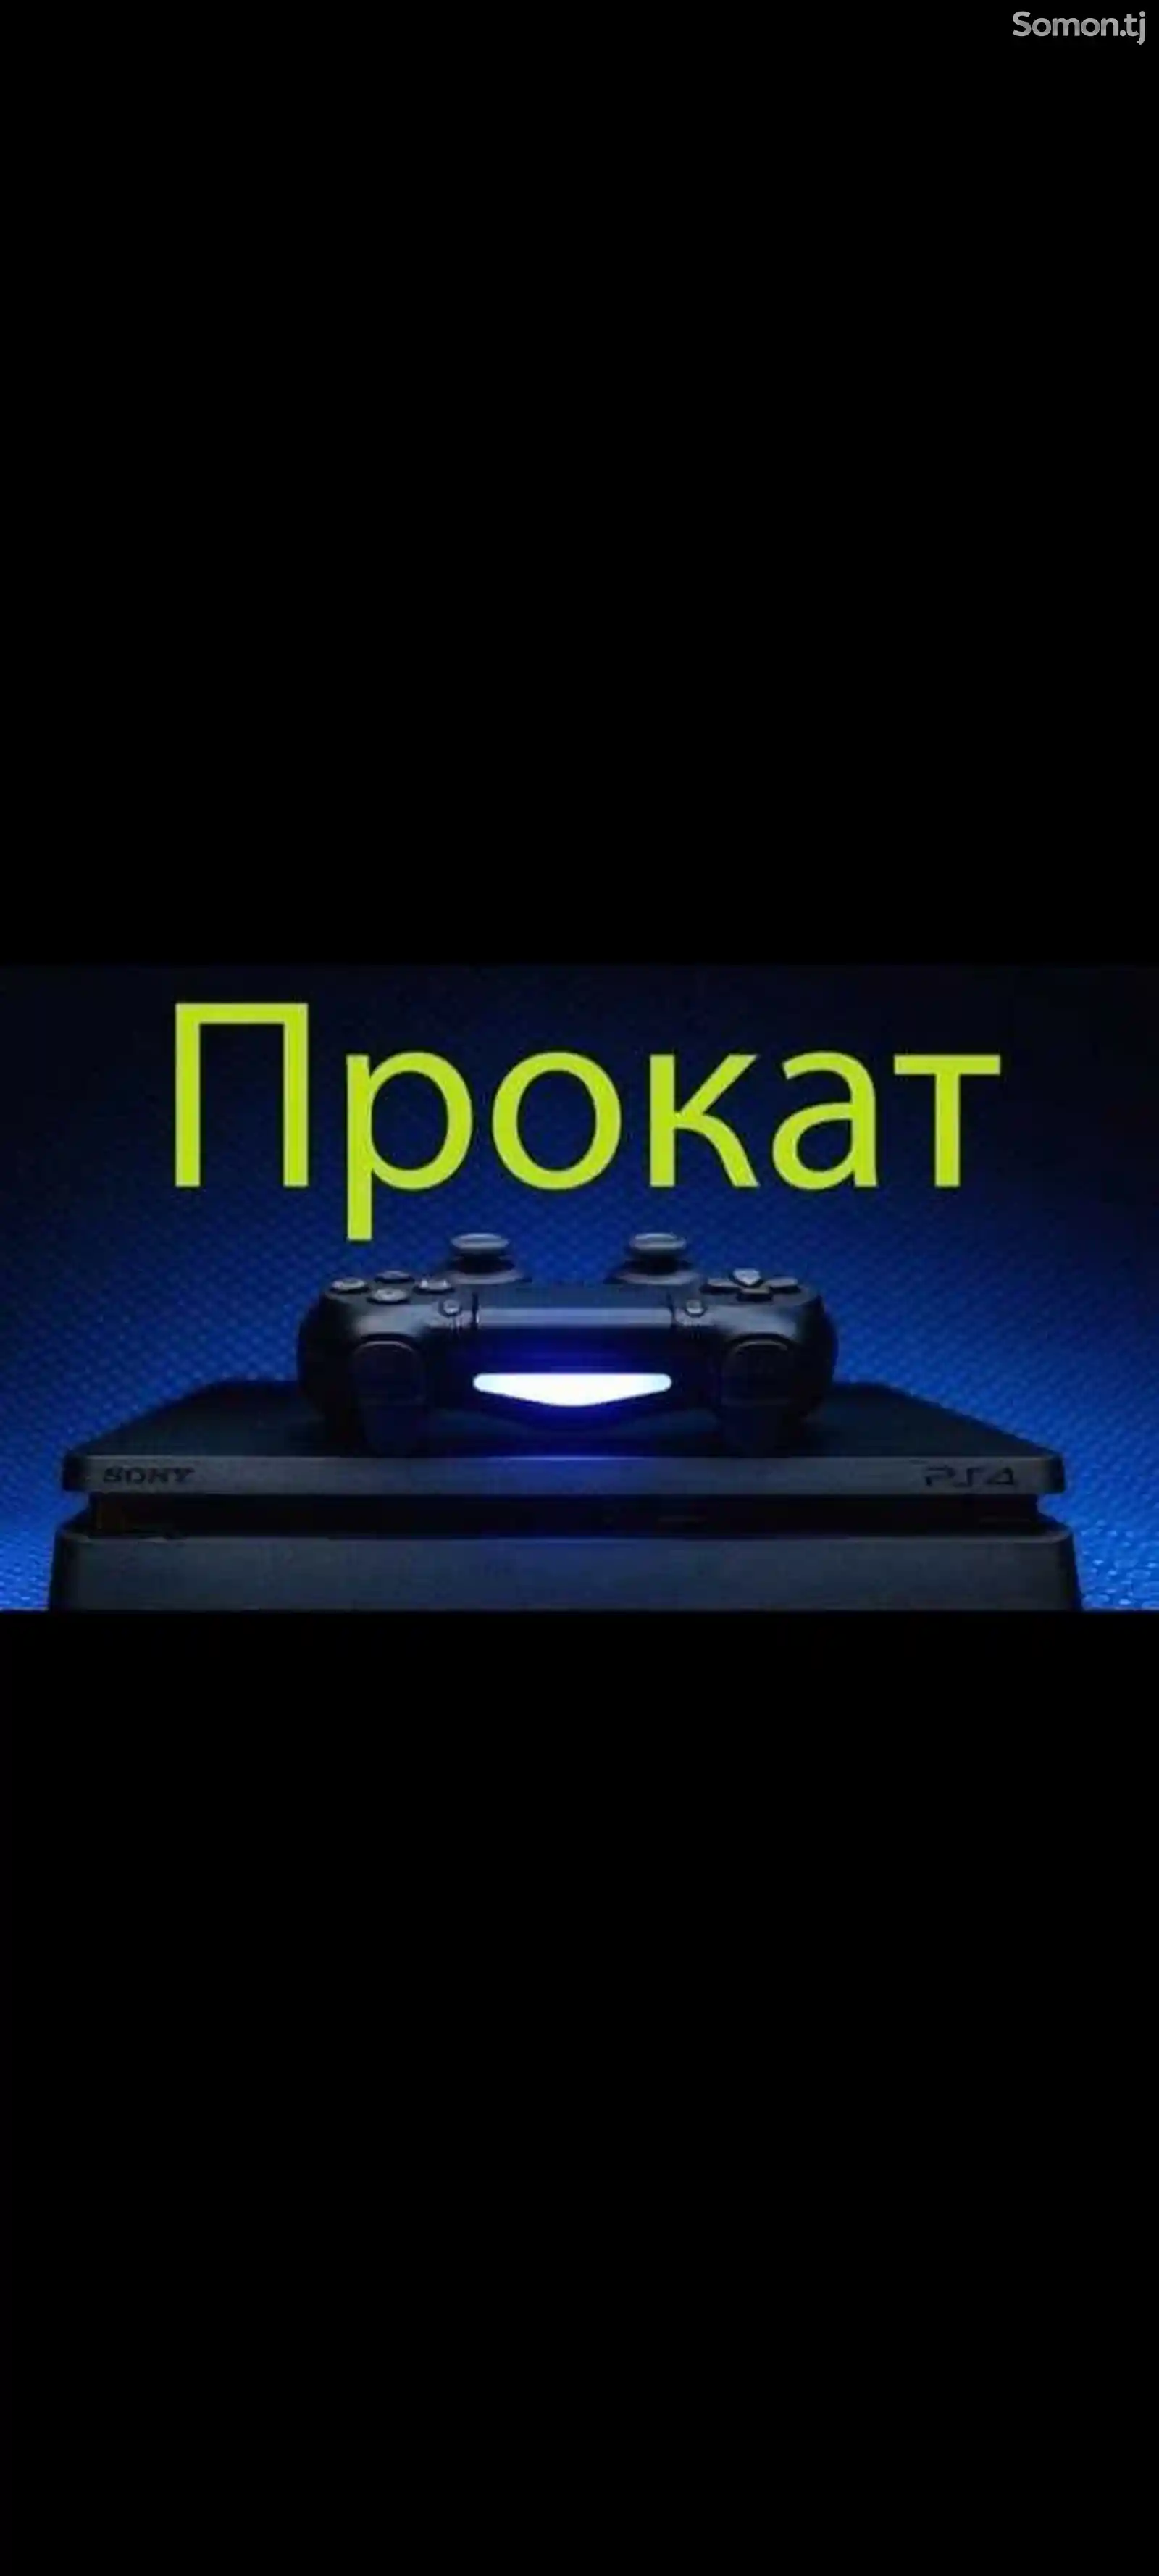 Игровая приставка Sony PlayStation 4 в аренду